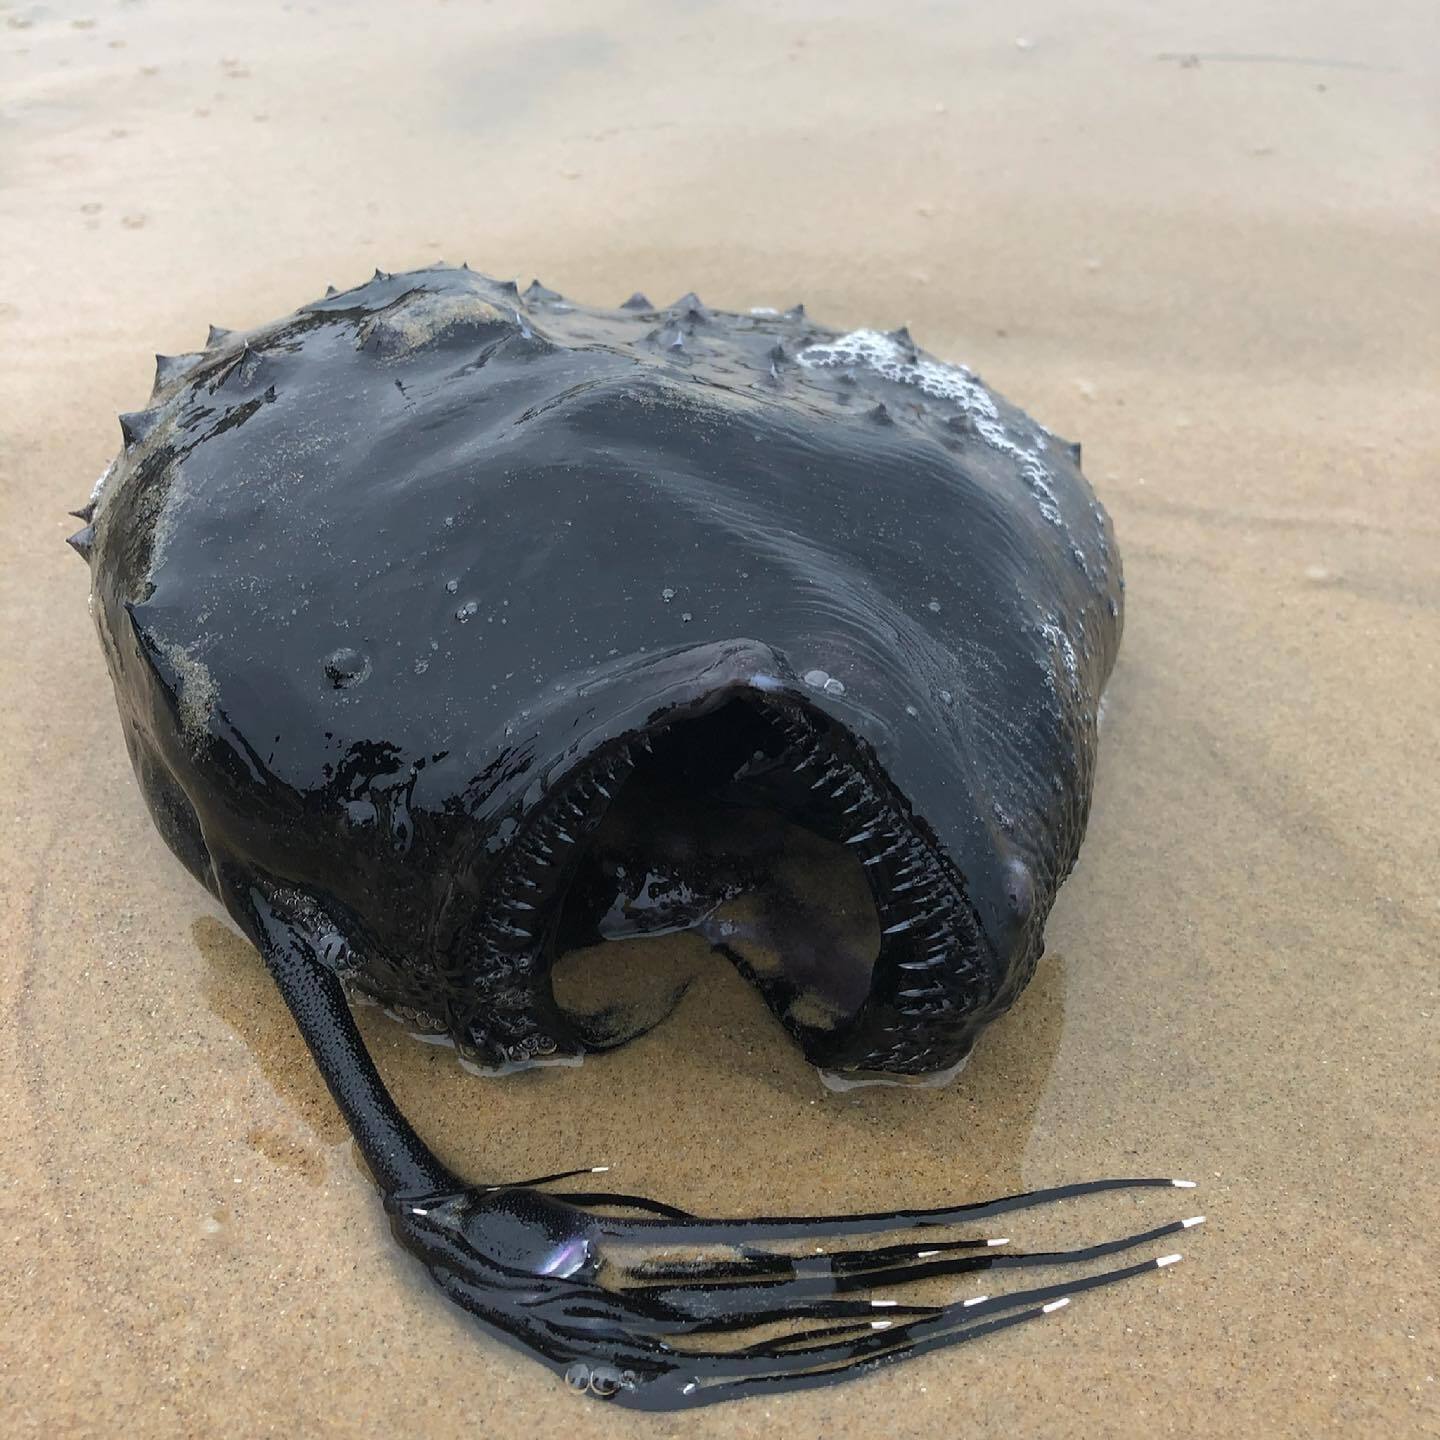 Ce poisson digne d'"Alien" retrouvé échoué sur une plage de Californie